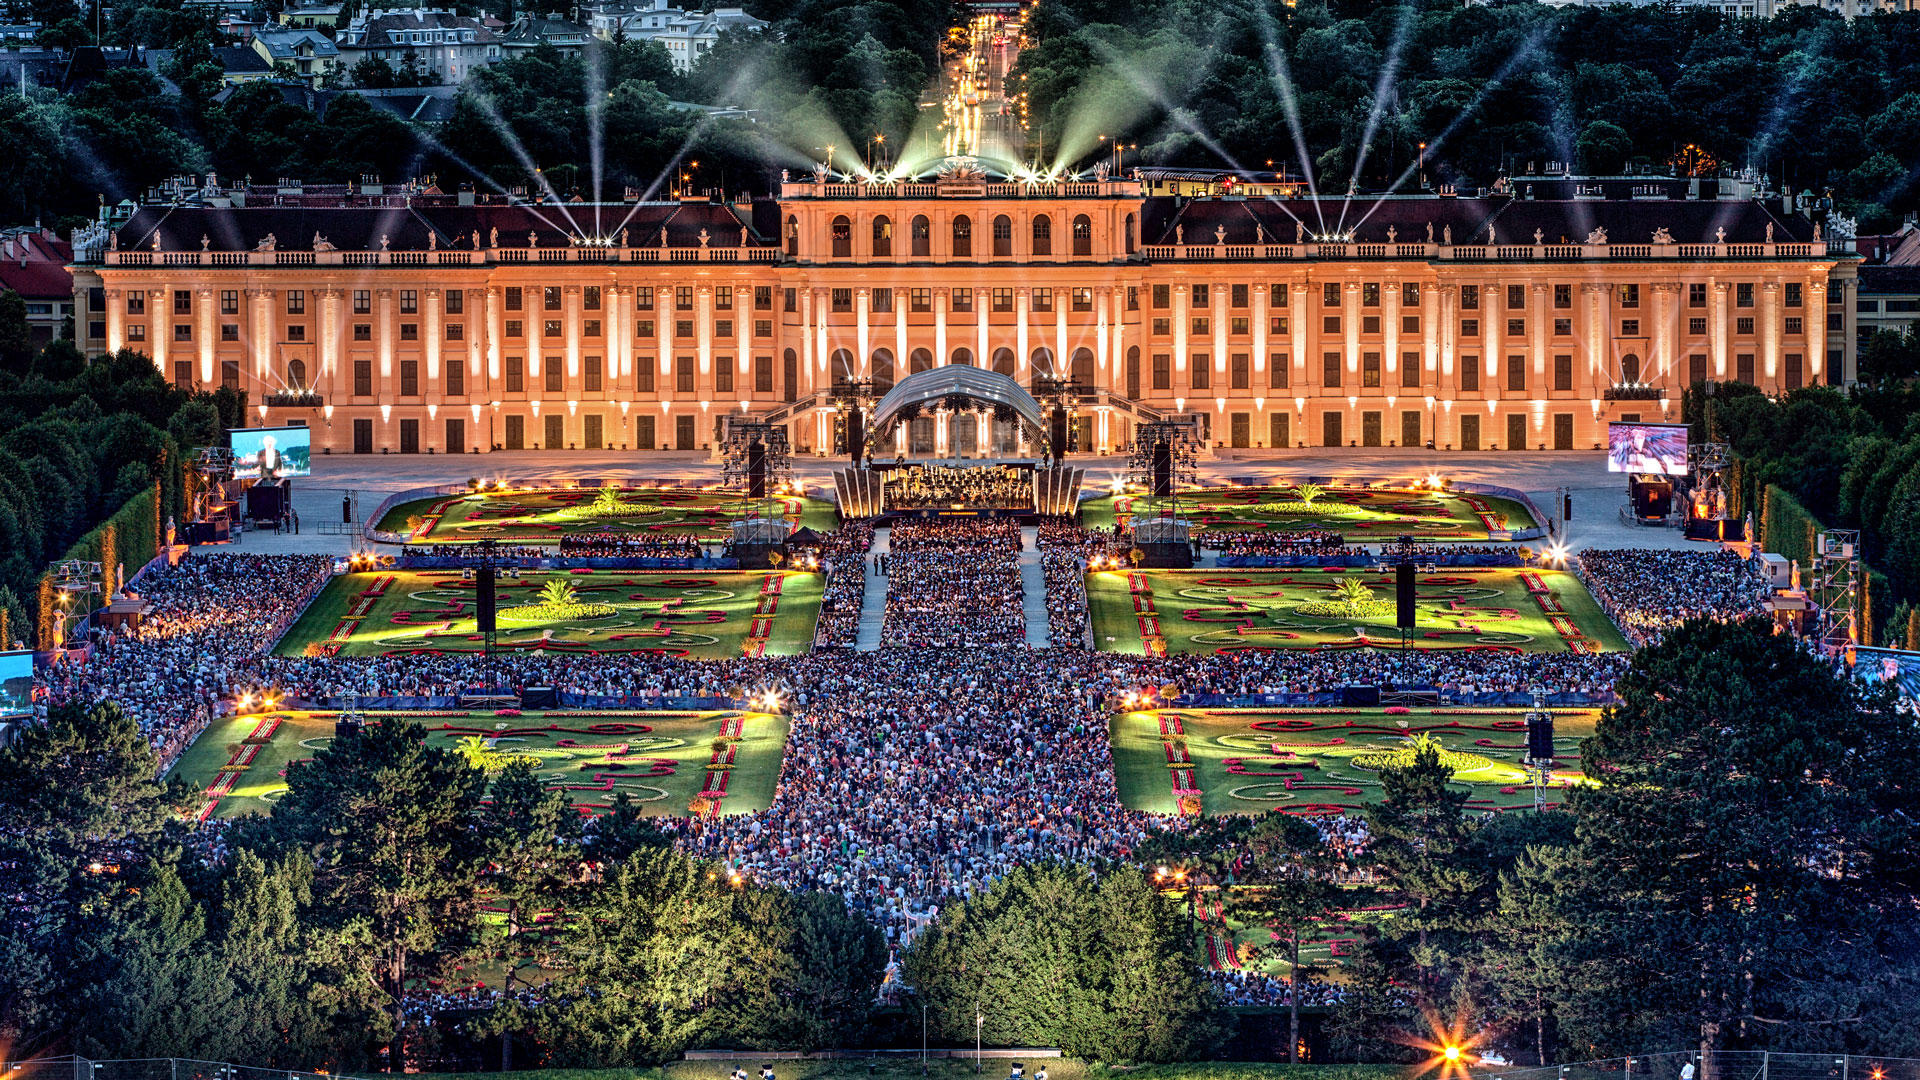 Vienna Summer Night Concert - Schonbrunn Summer Night Concert 2019 - HD Wallpaper 